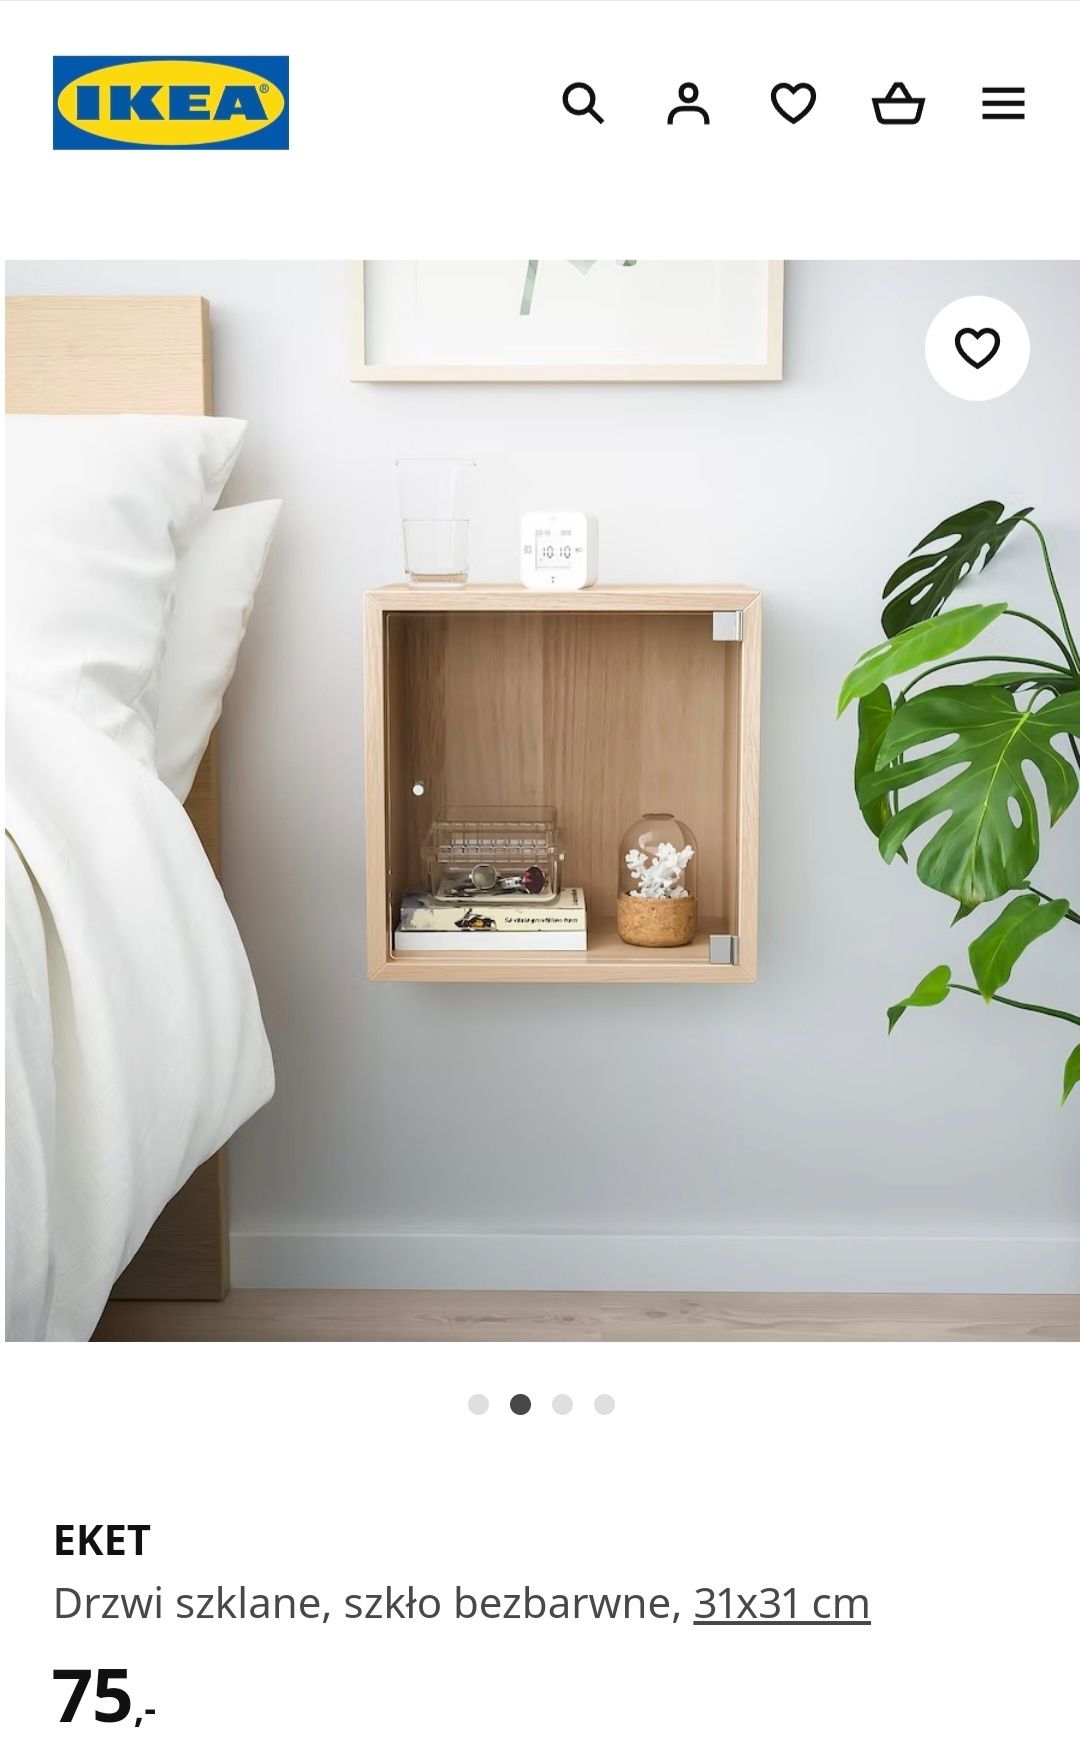 IKEA Drzwiczki drzwi szklane EKET 31x31 cm do gabloty